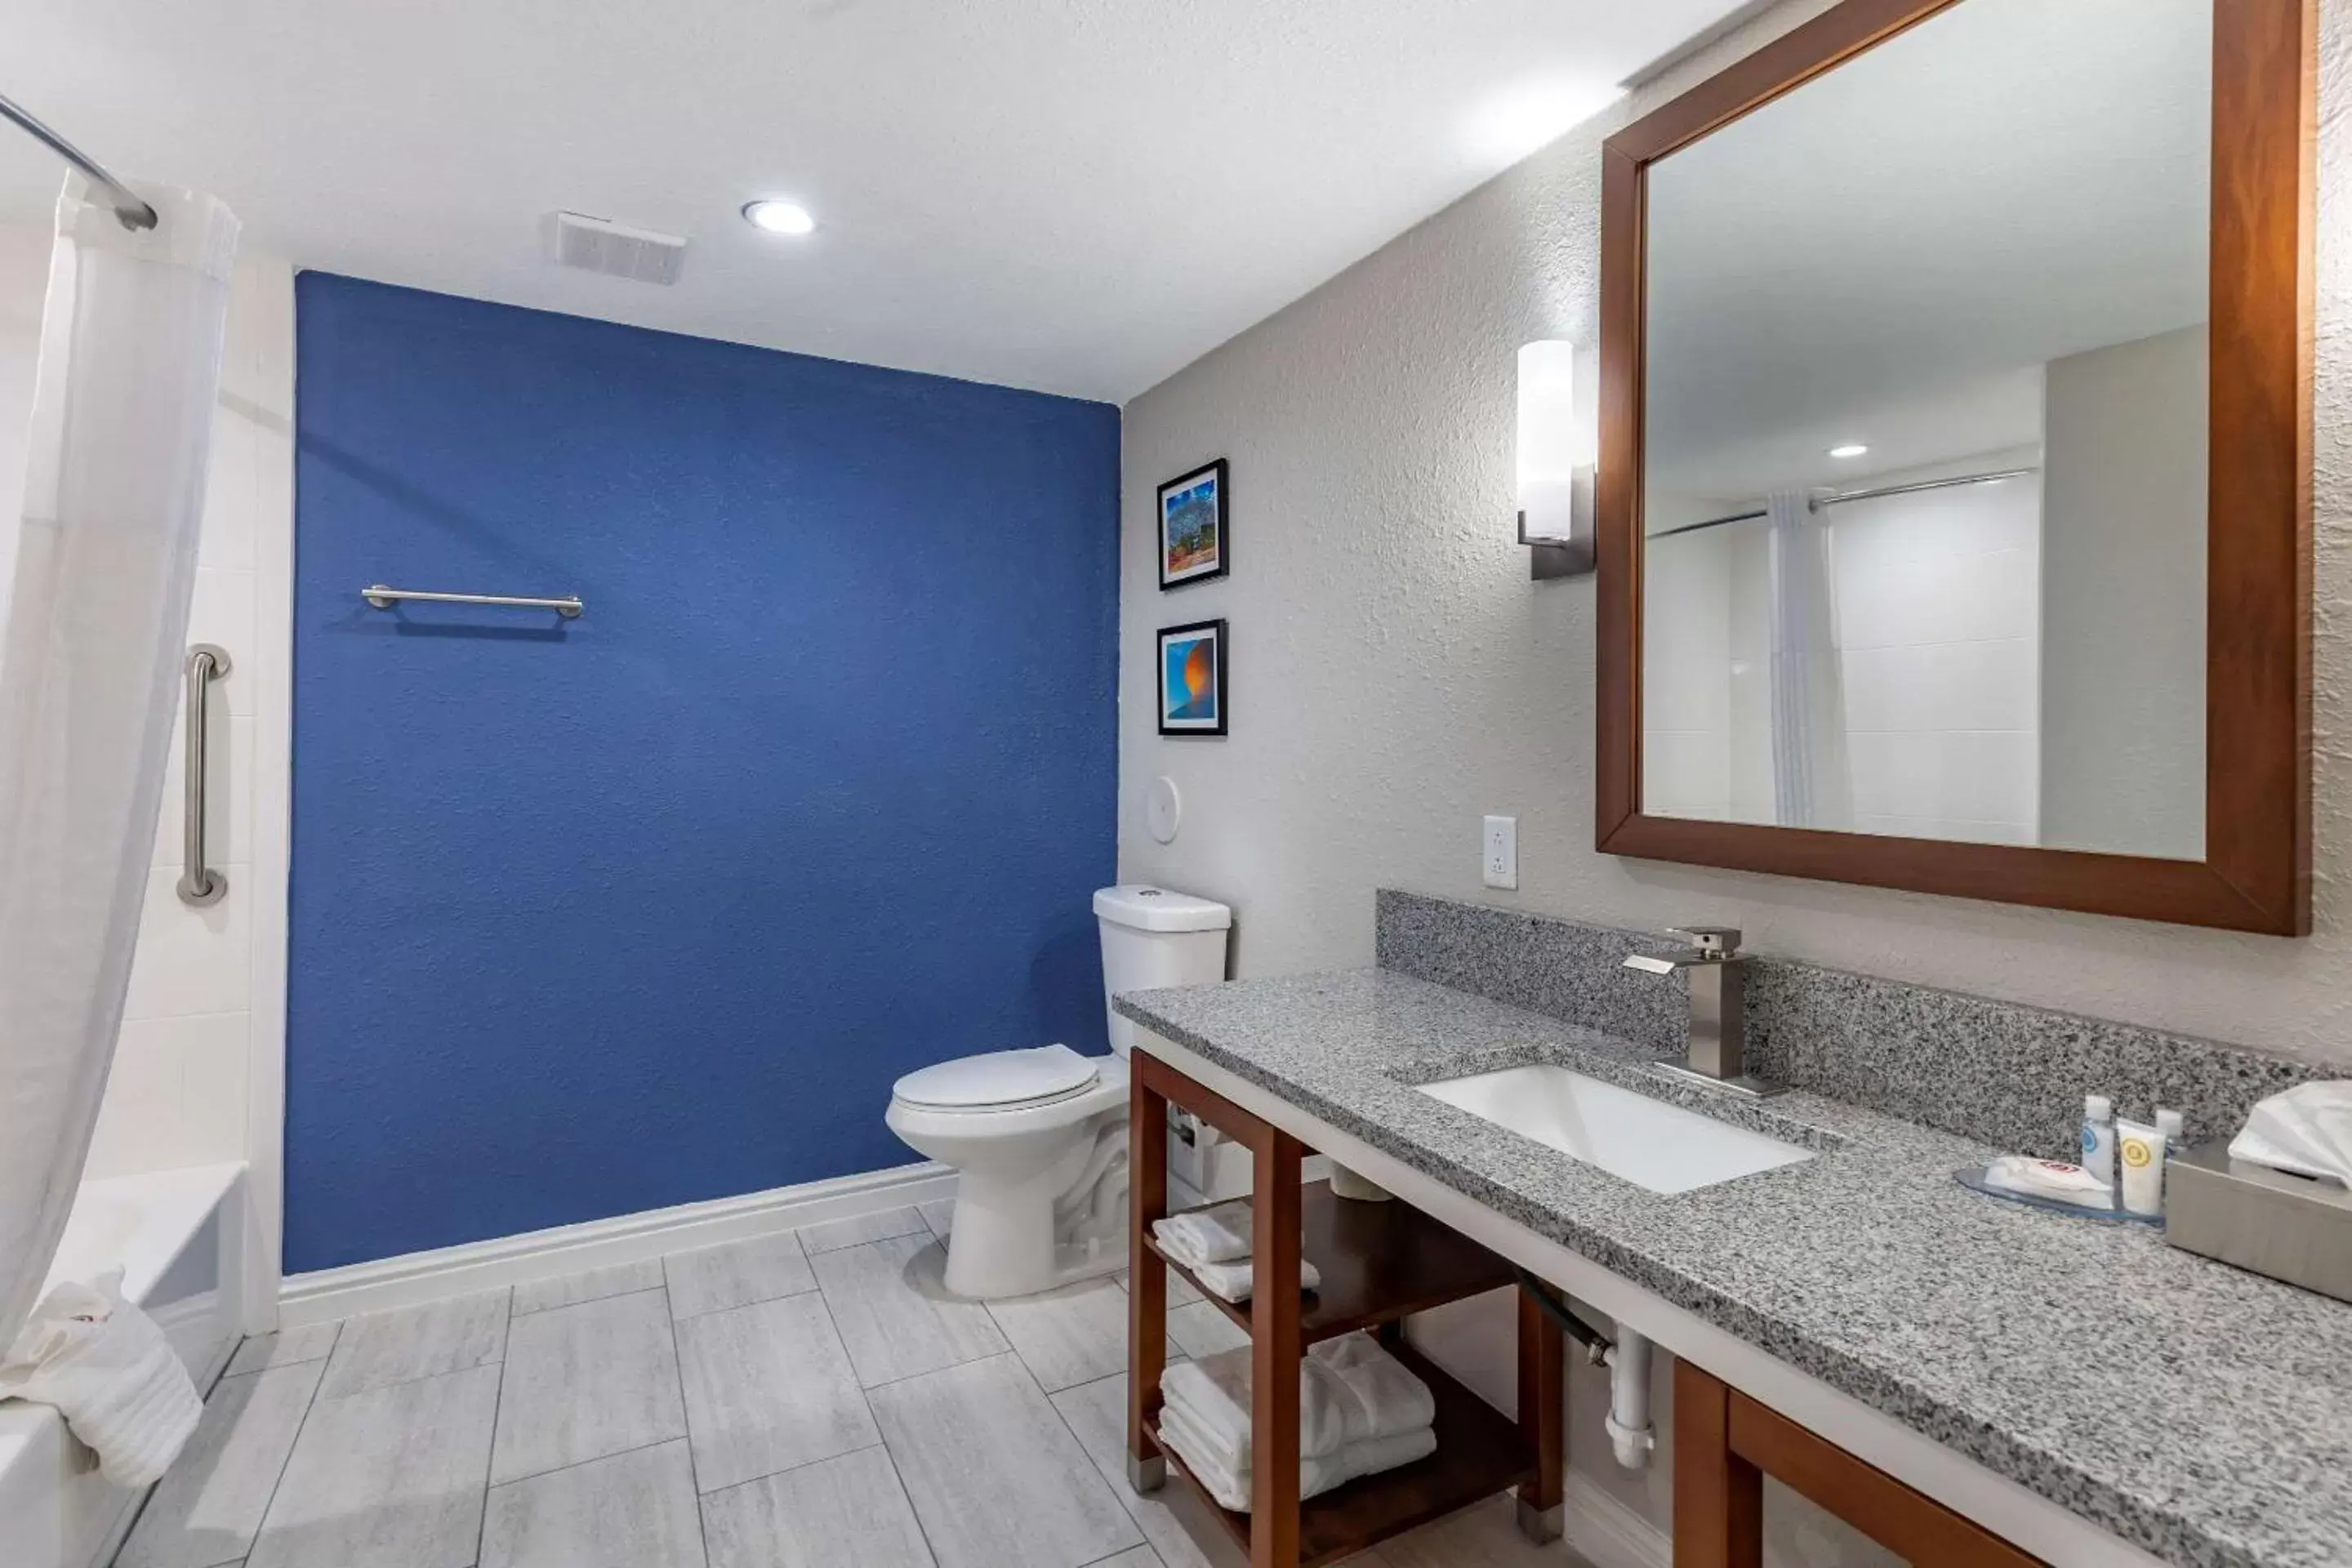 Bedroom, Bathroom in Comfort Suites St Louis - Sunset Hills